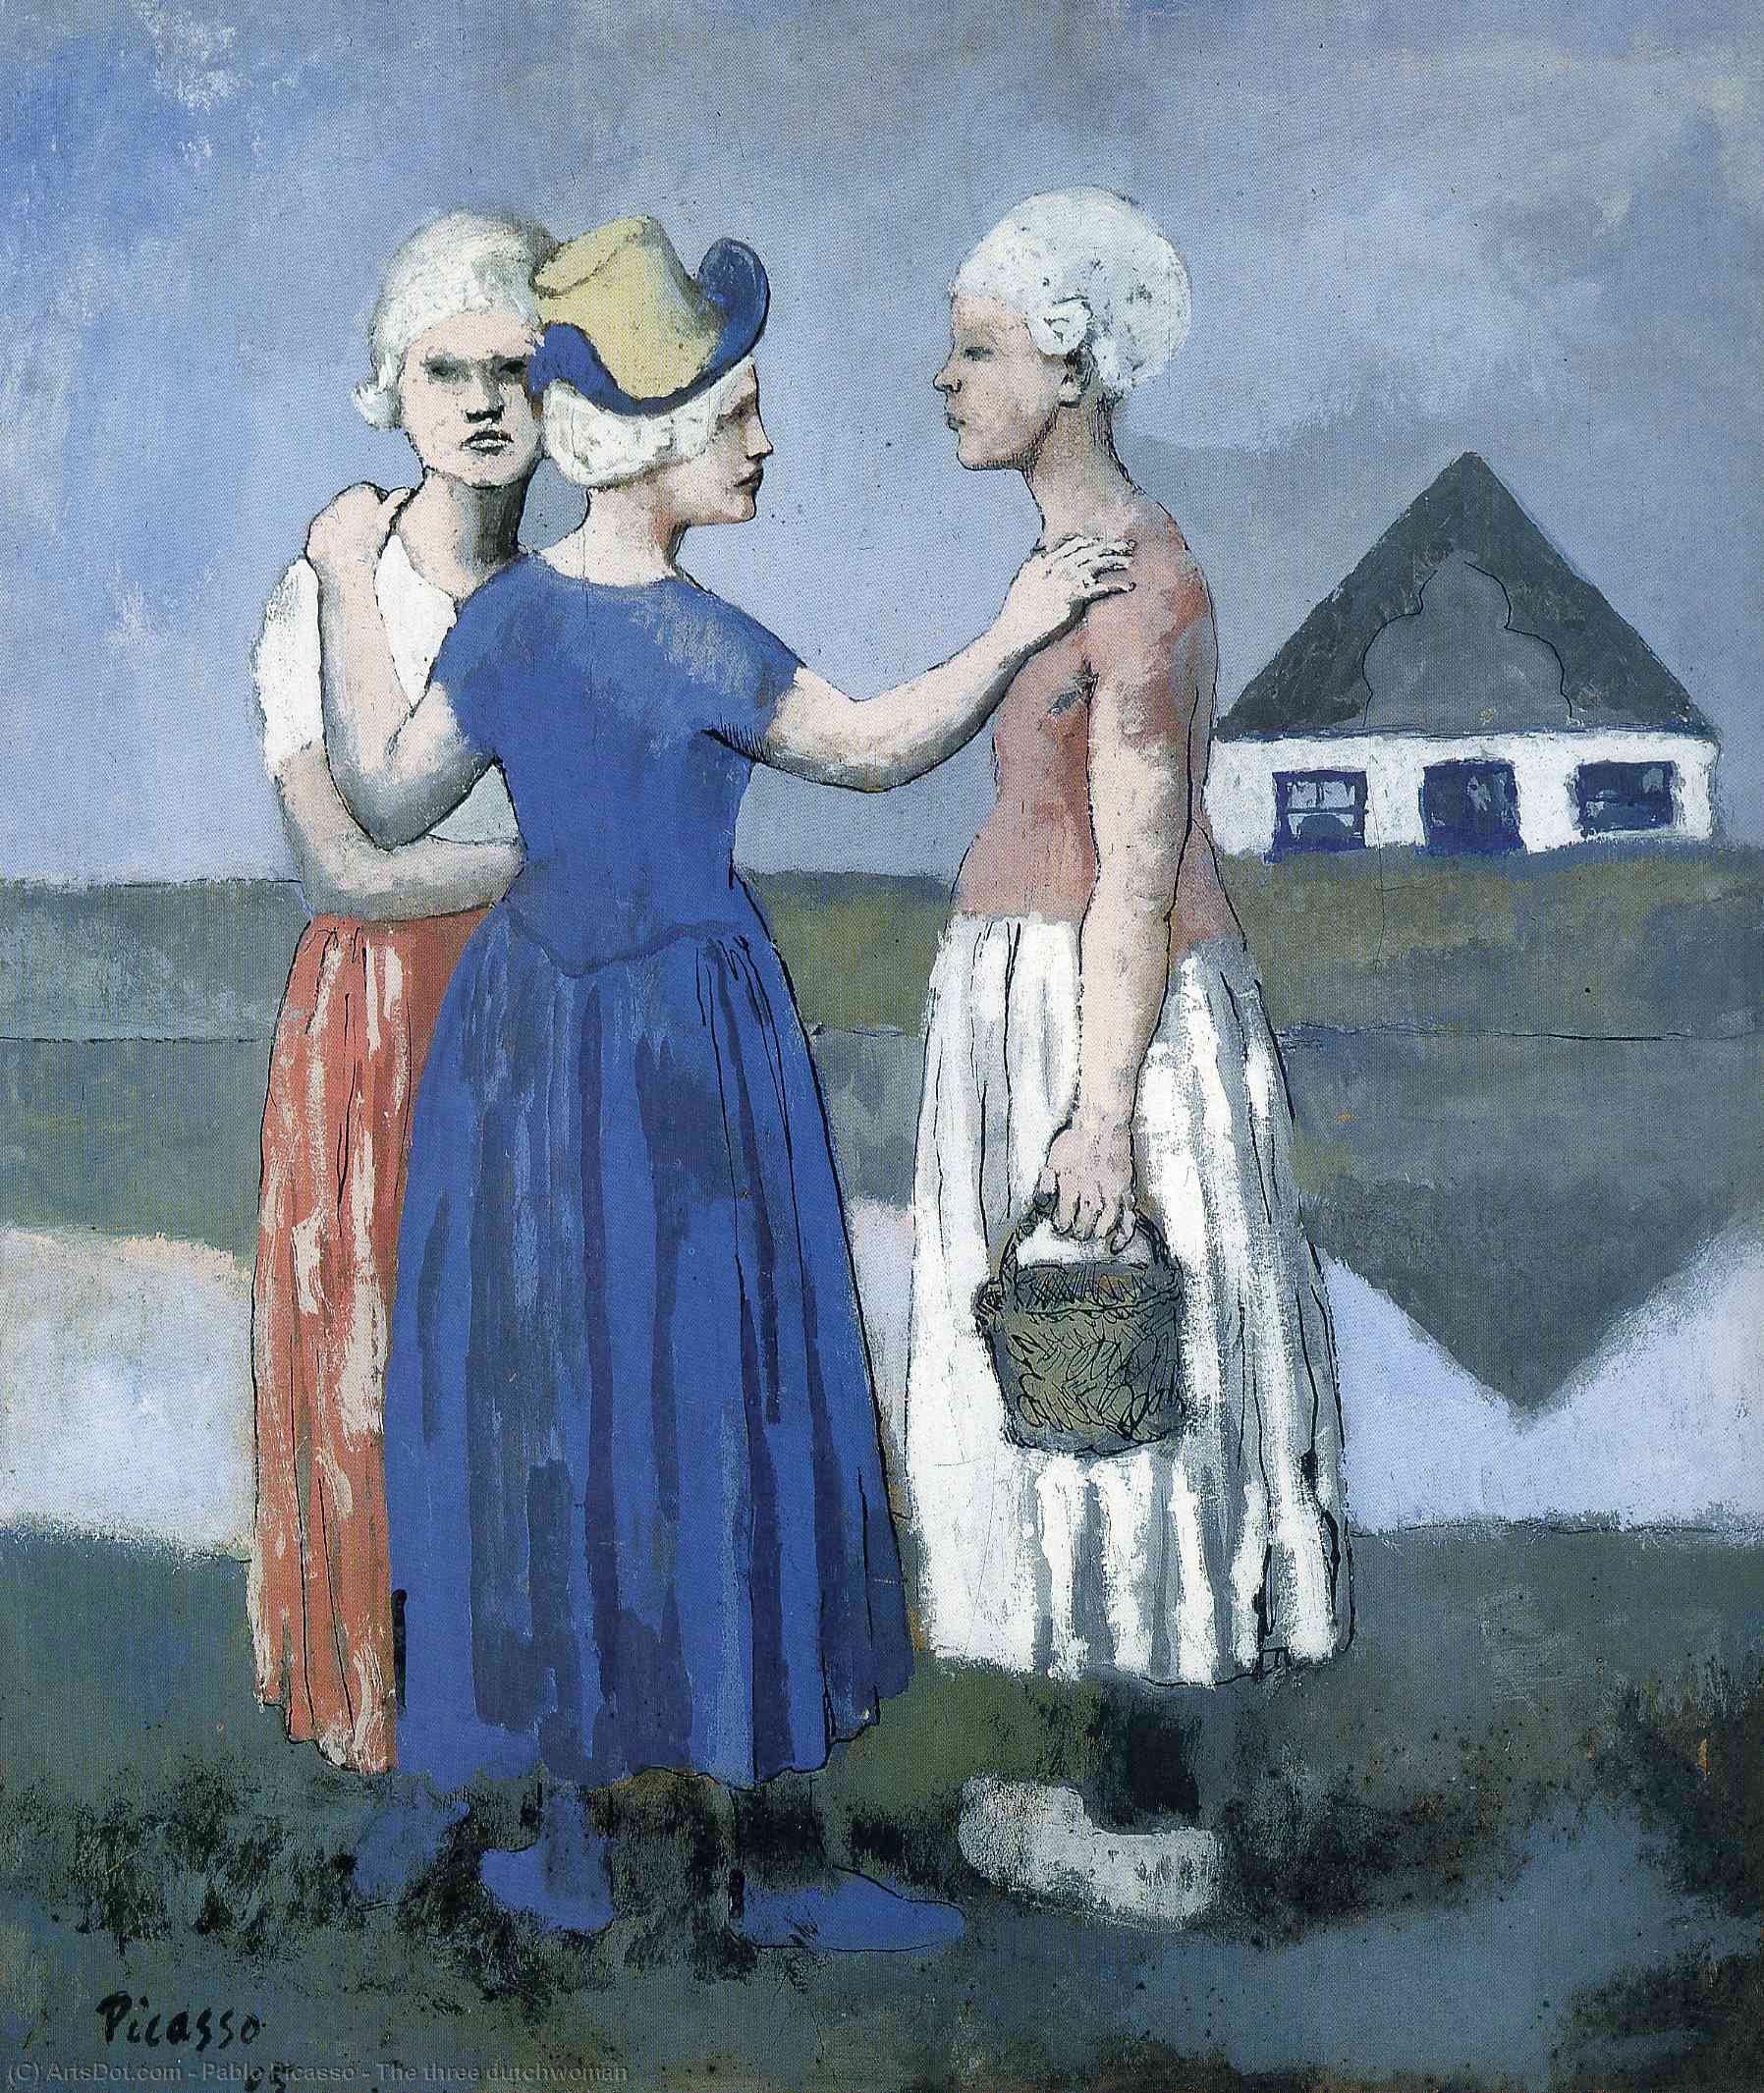 Wikioo.org - Bách khoa toàn thư về mỹ thuật - Vẽ tranh, Tác phẩm nghệ thuật Pablo Picasso - The three dutchwoman